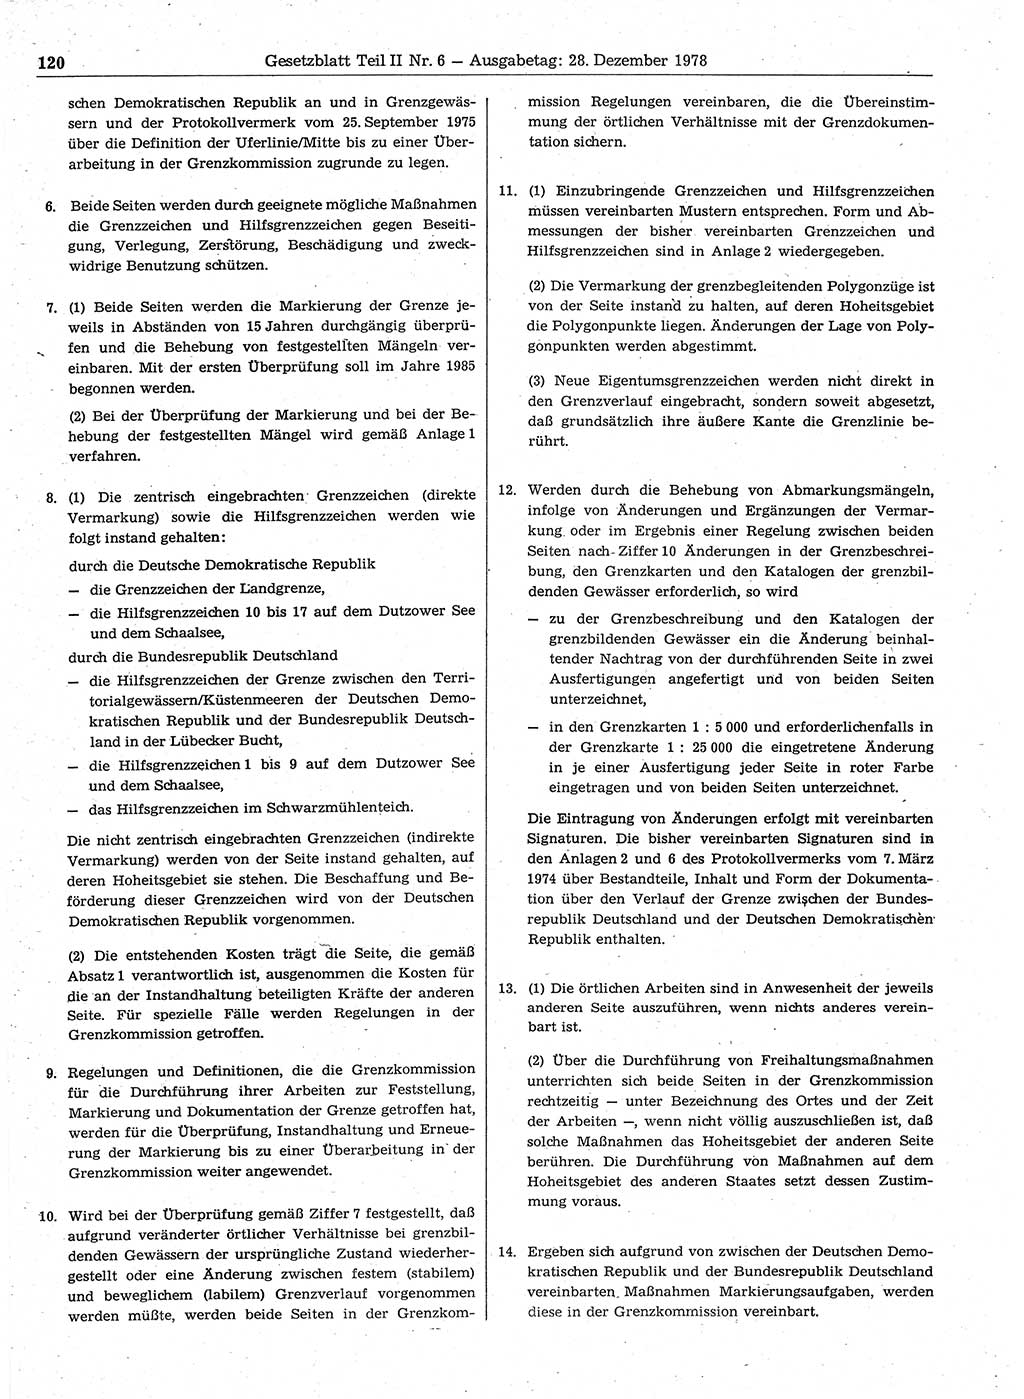 Gesetzblatt (GBl.) der Deutschen Demokratischen Republik (DDR) Teil ⅠⅠ 1978, Seite 120 (GBl. DDR ⅠⅠ 1978, S. 120)